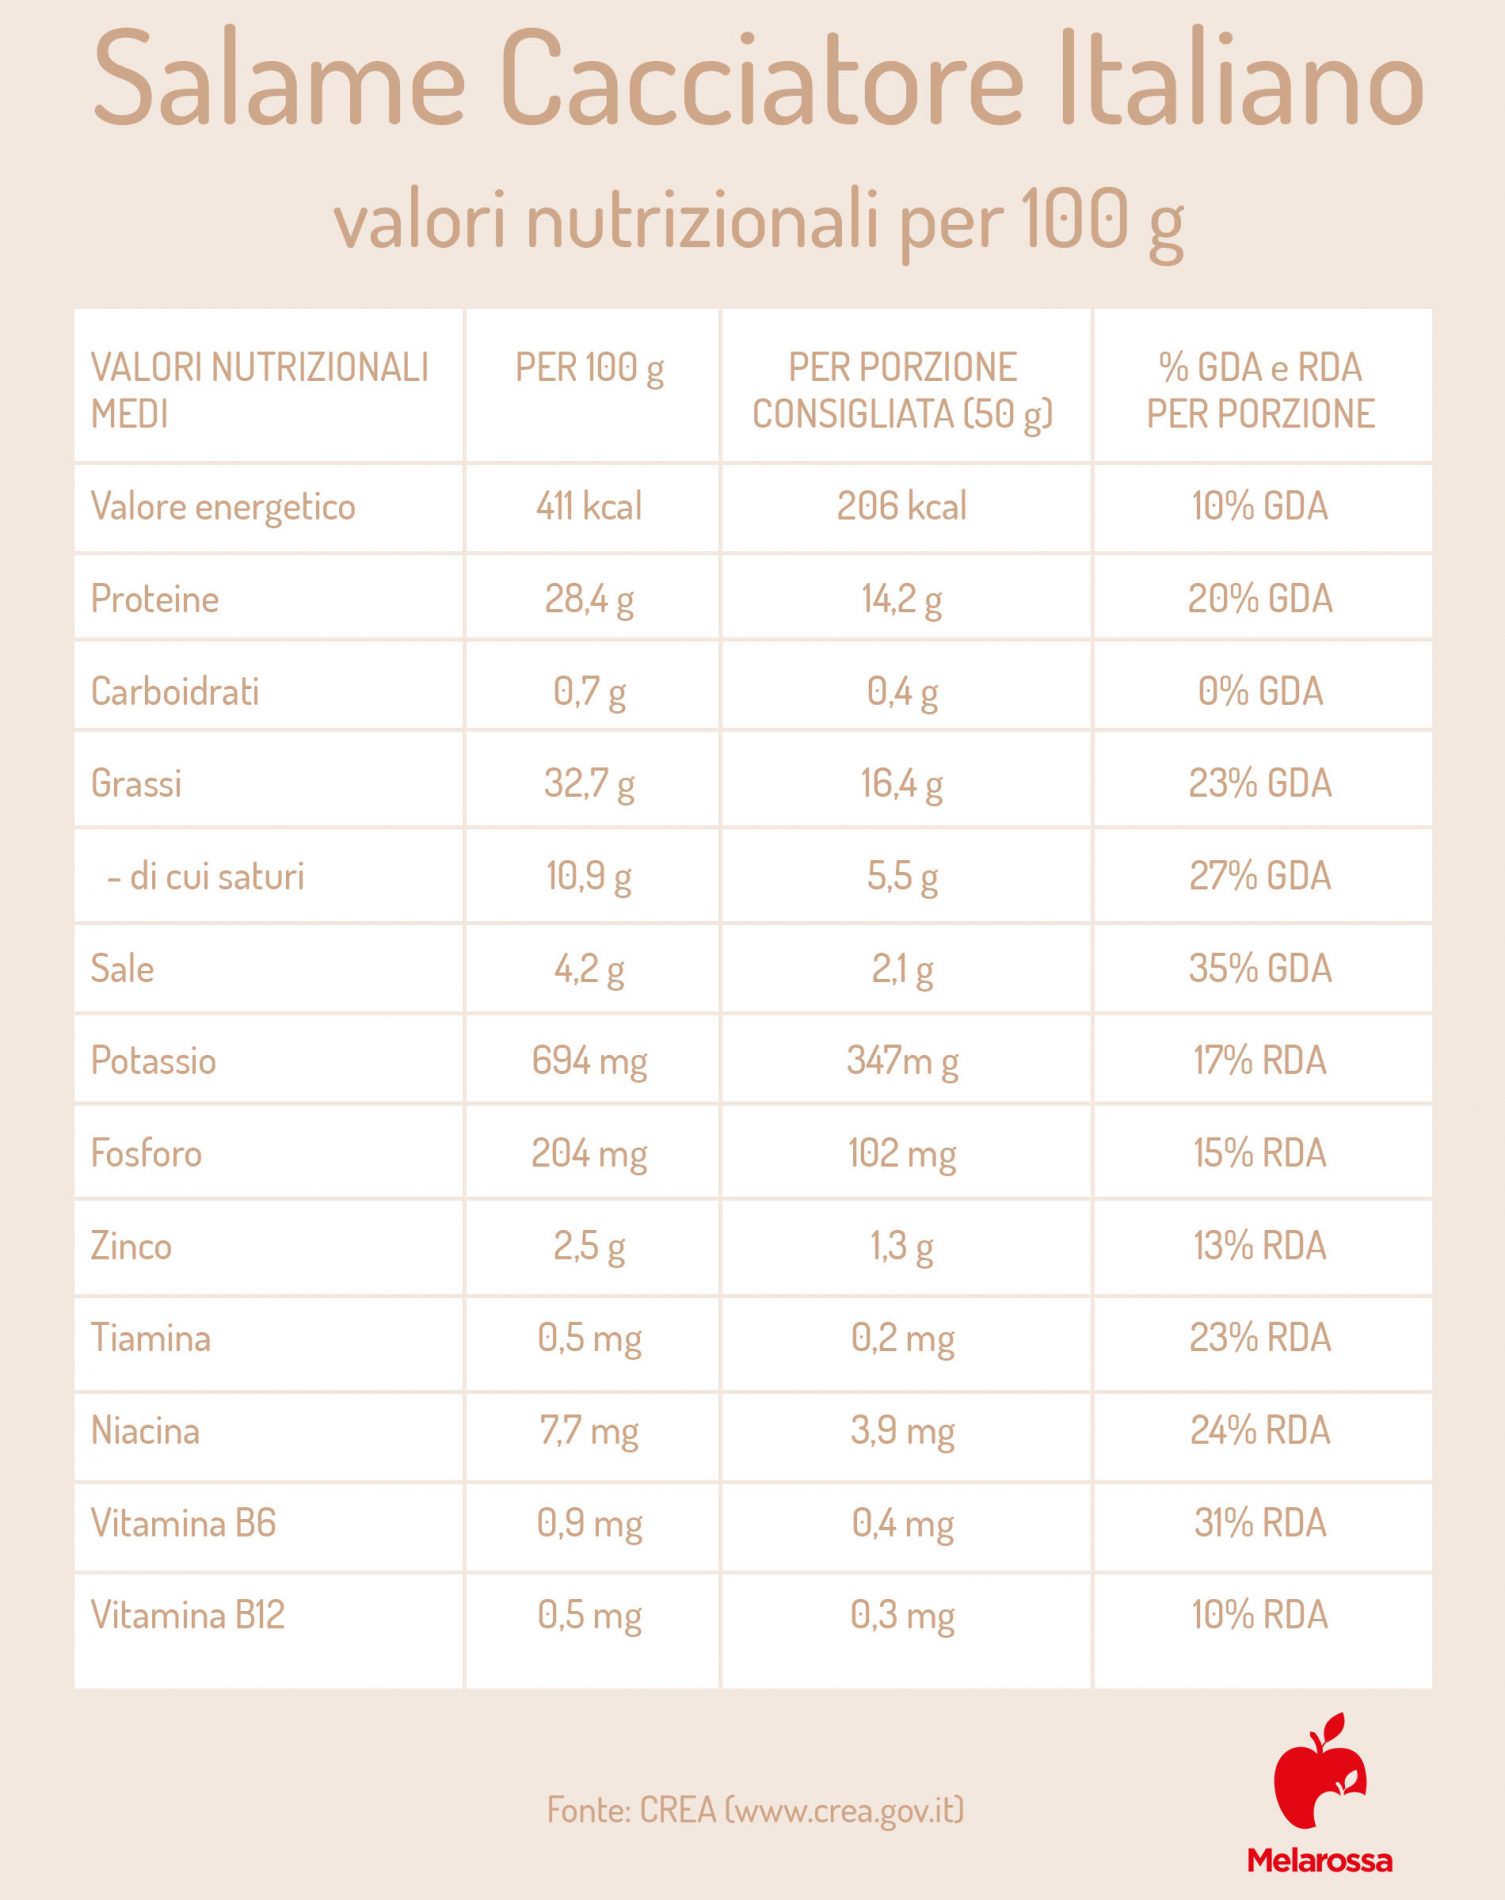 salame cacciatore Italiano: valor nutrizionali 